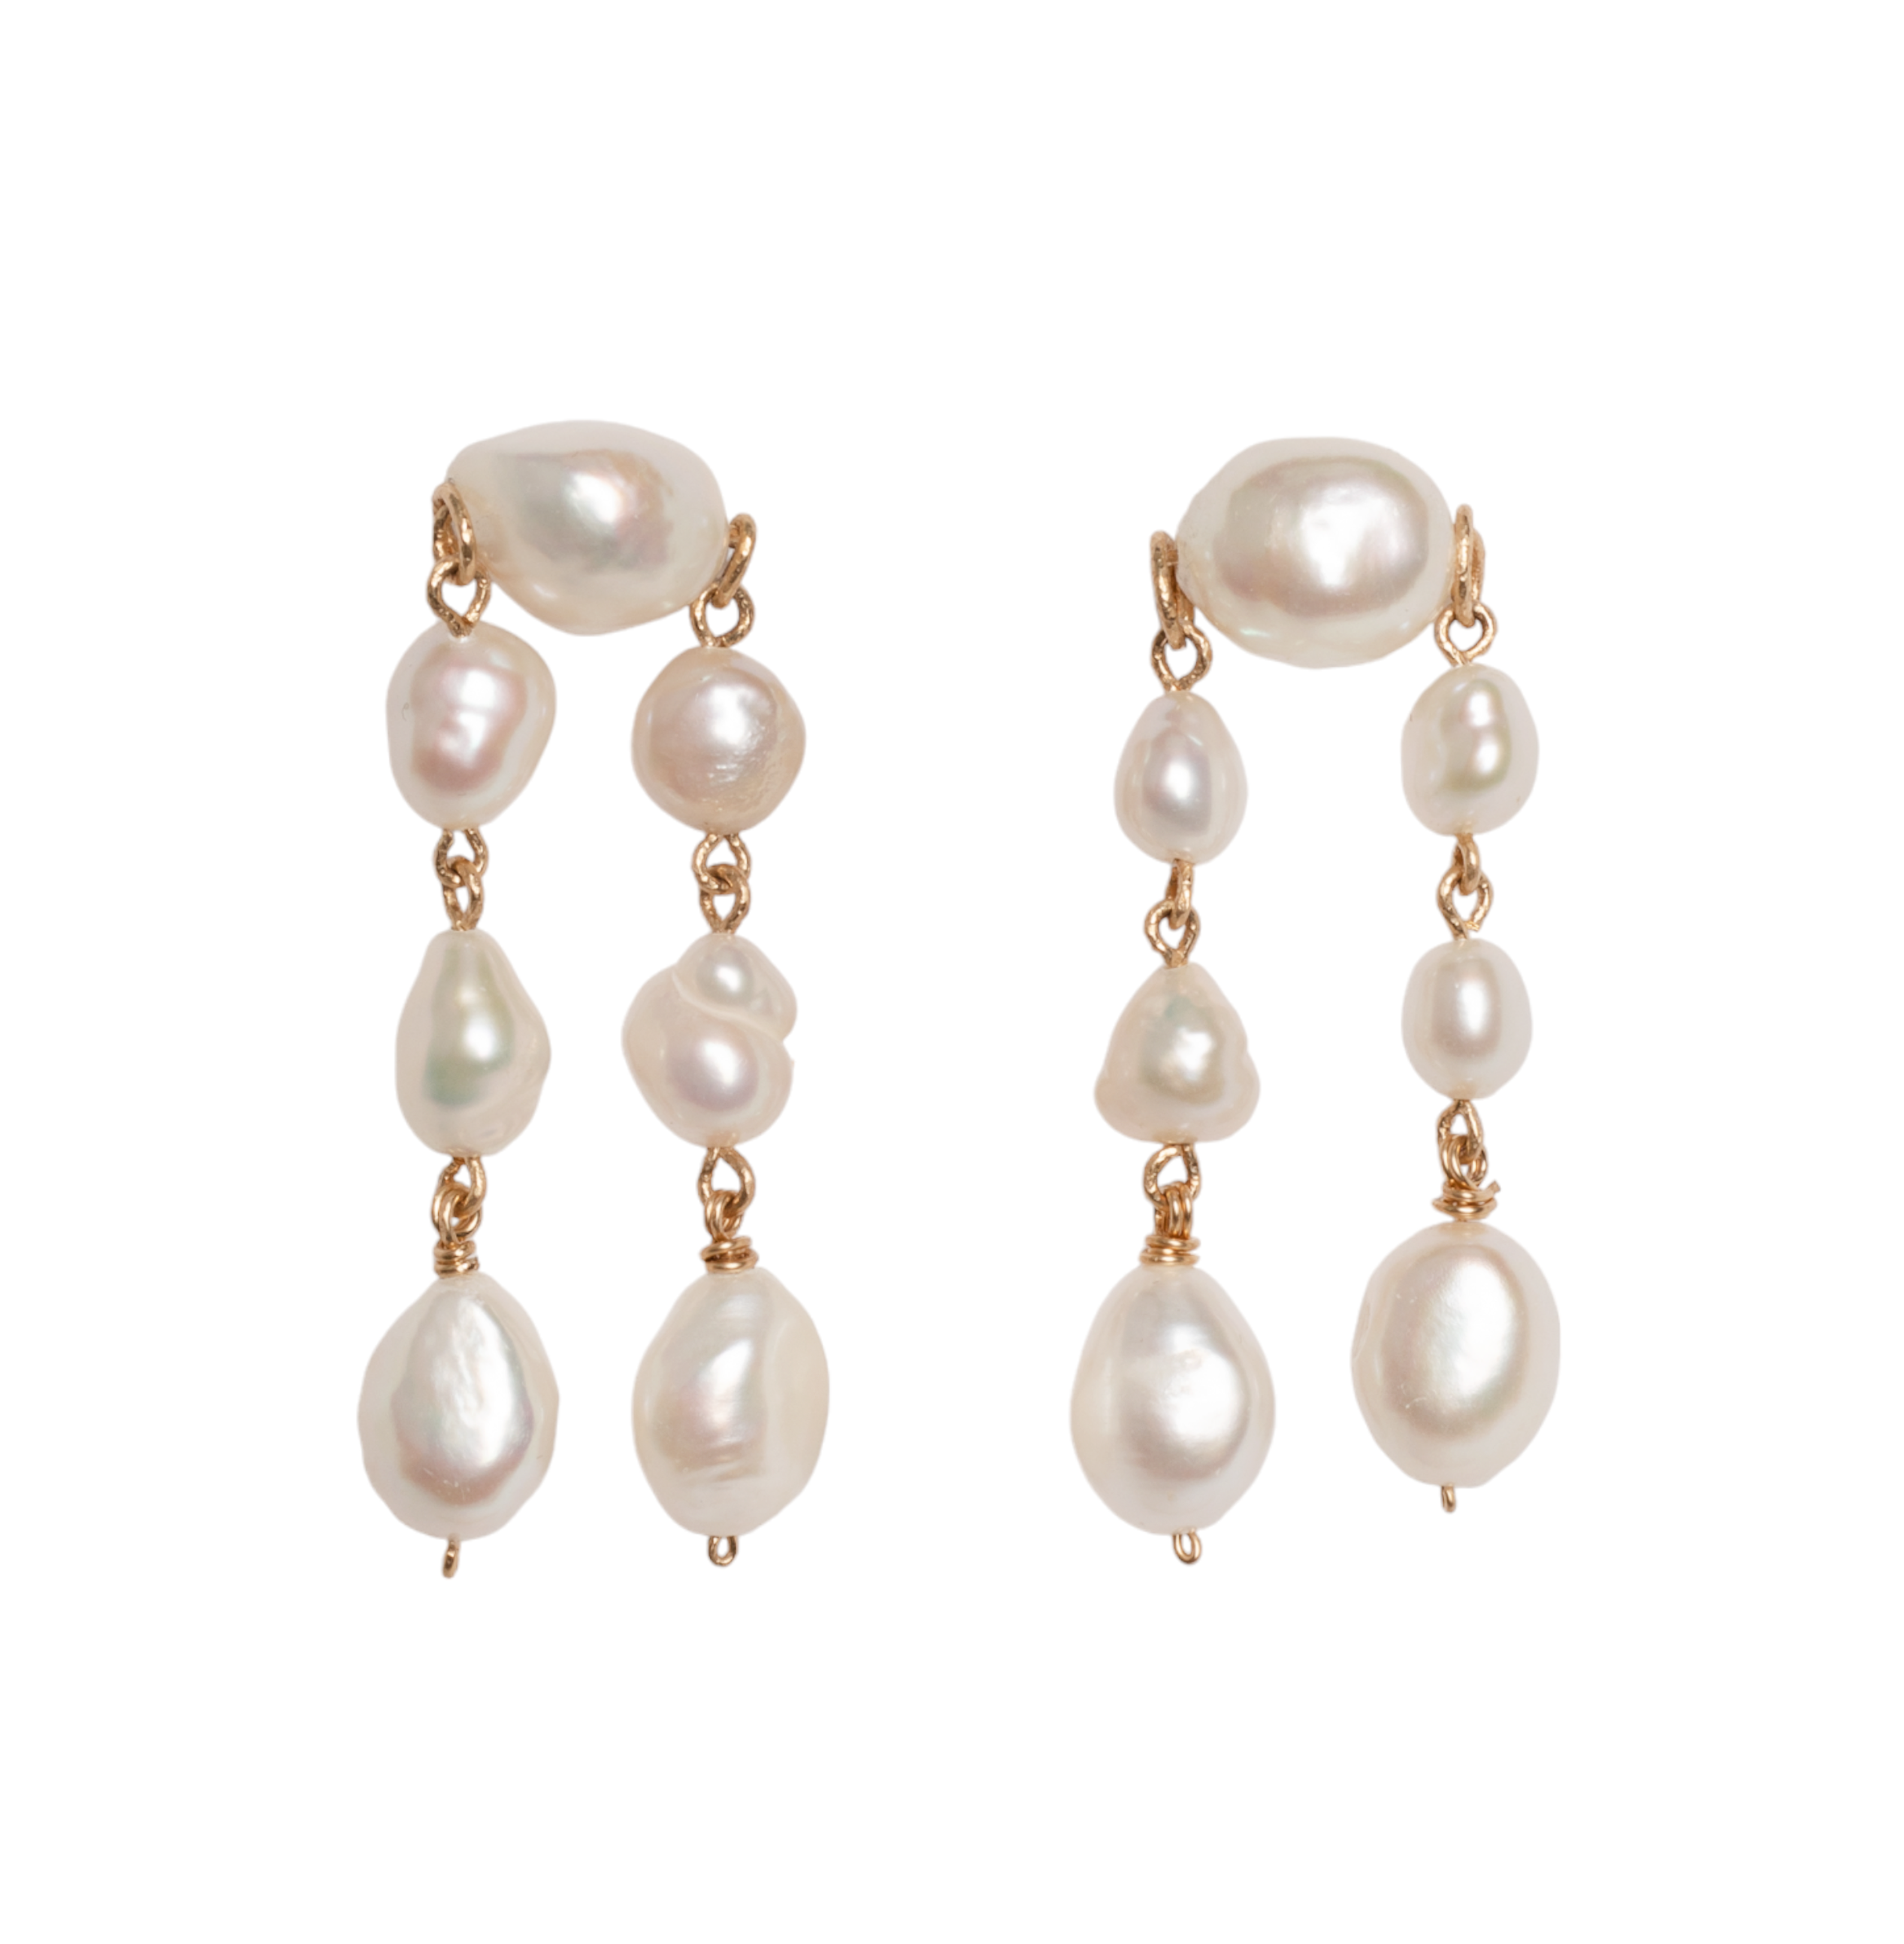 Barroca Dangle Earrings #2 - Pearl Earrings TARBAY   